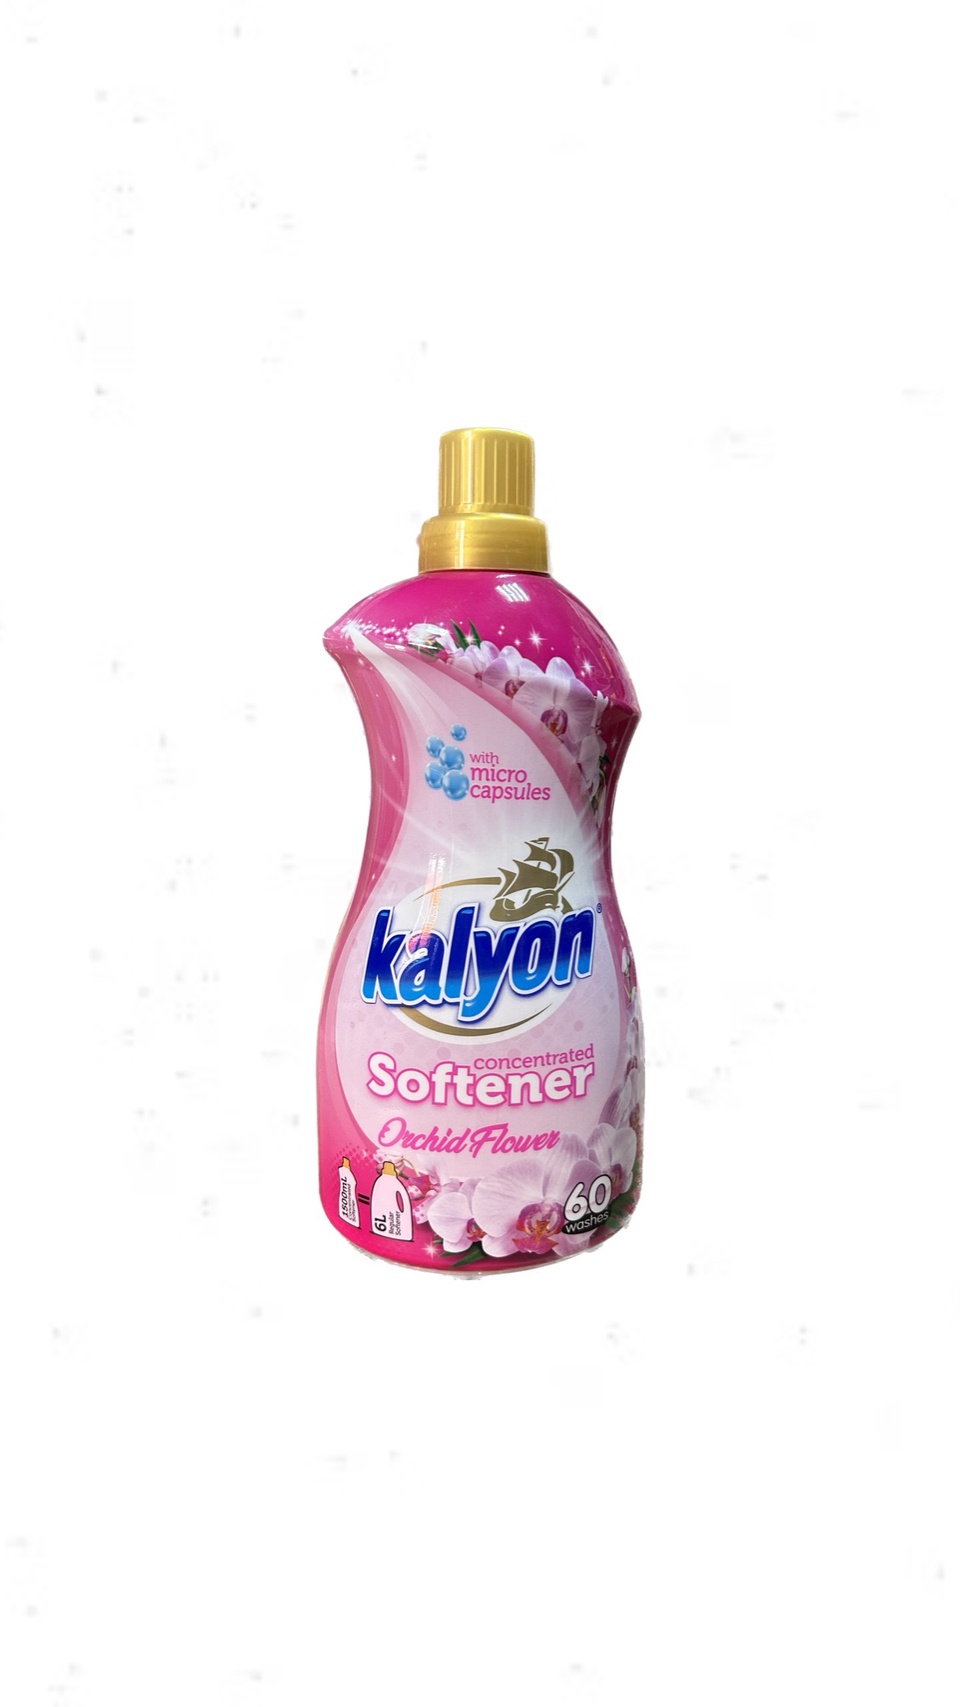 Кондиционер для белья Kalyon концентрат 1,5 л. «Орхидея» - 400 ₽, заказать онлайн.